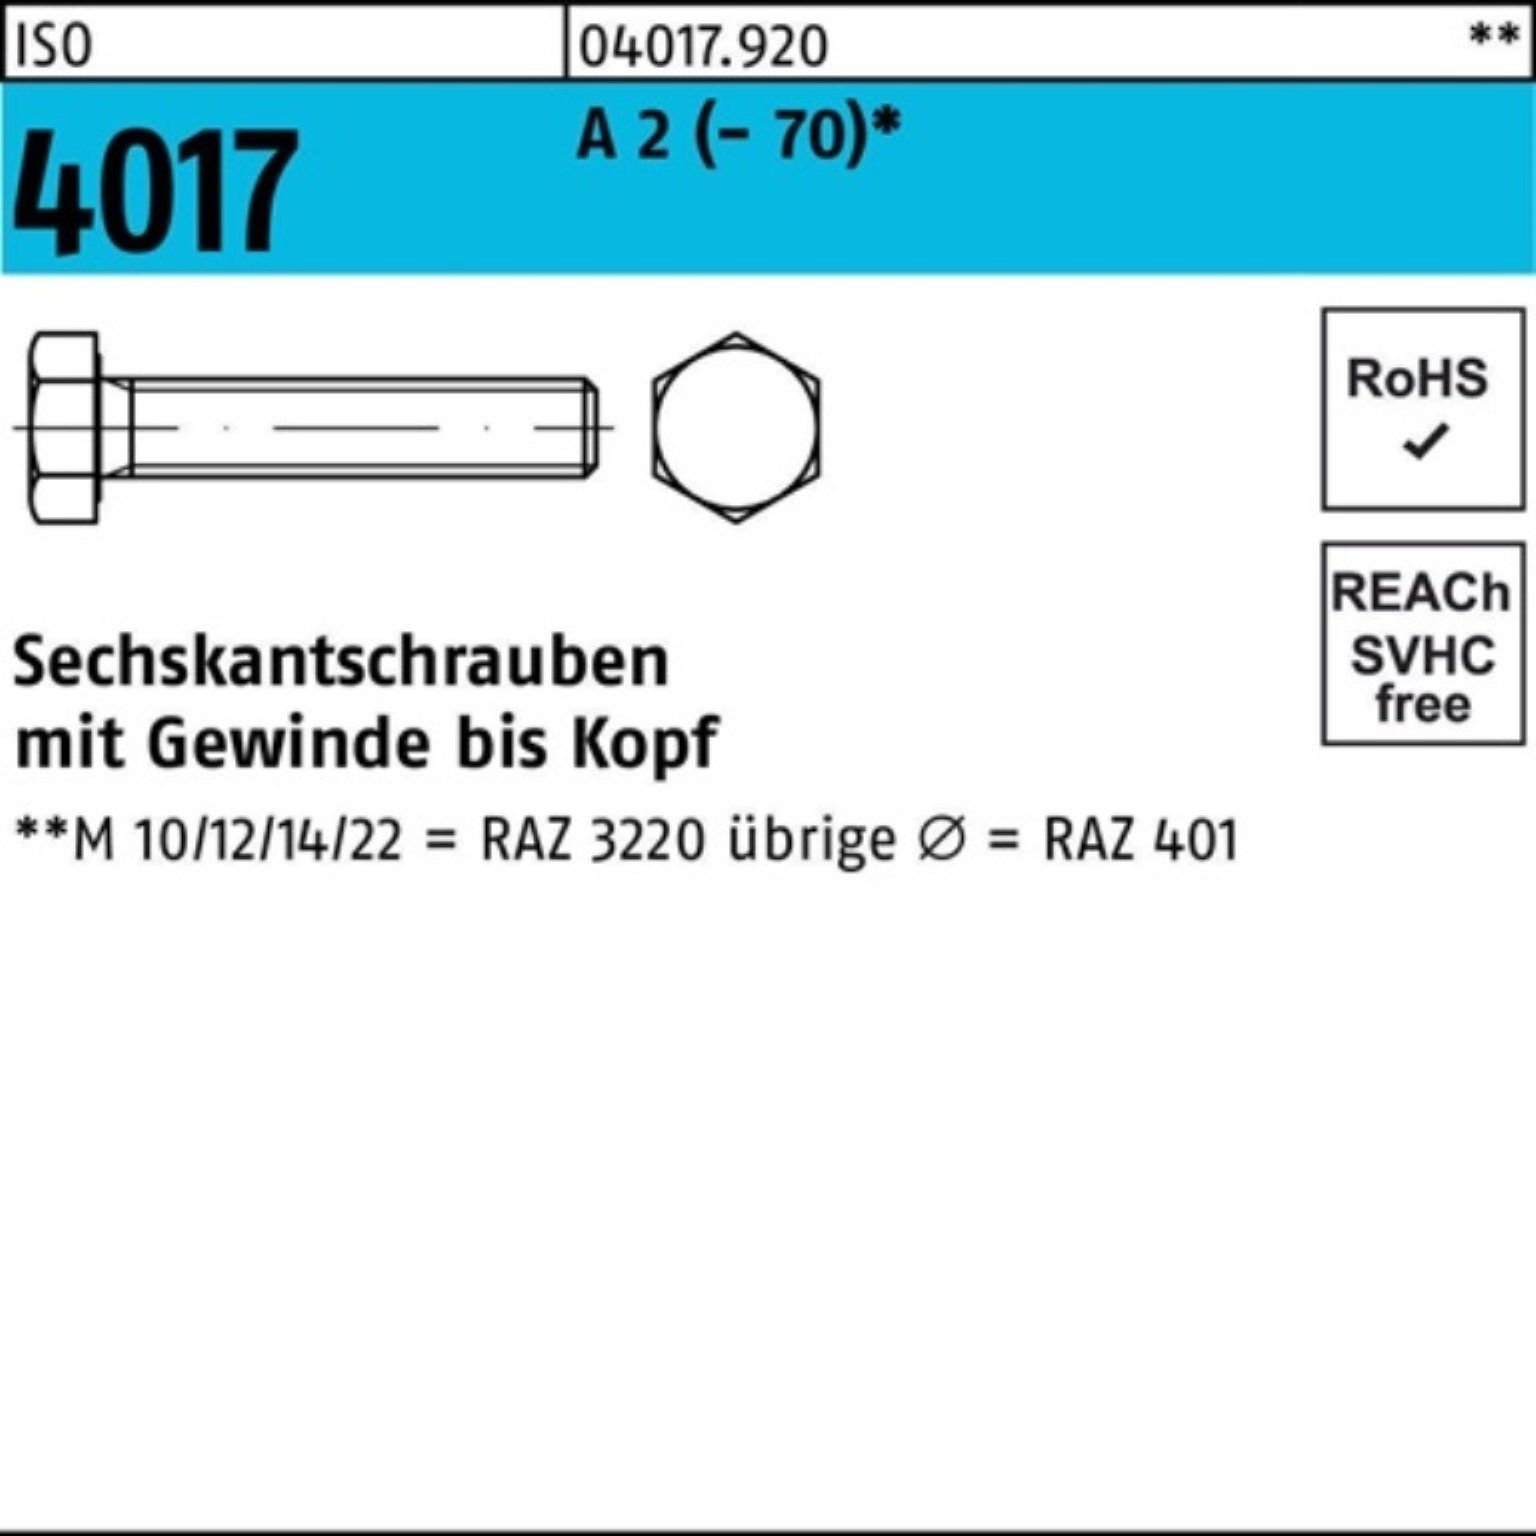 Bufab Sechskantschraube 100er Pack Sechskantschraube ISO 4017 VG M16x 150 A 2 (70) 25 Stück